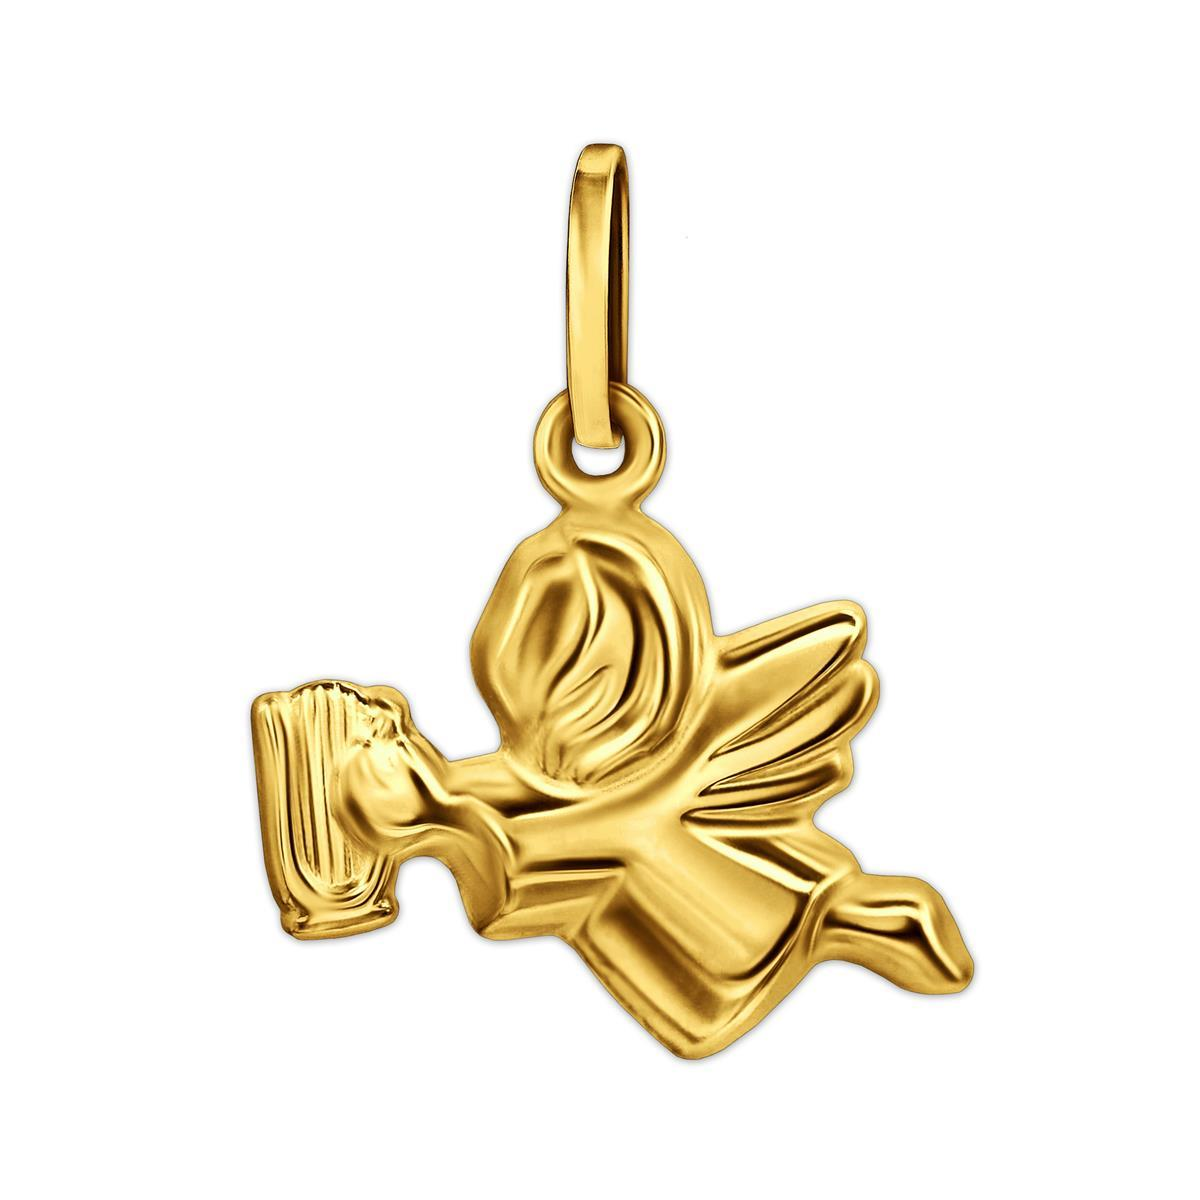 Goldener Anhänger Schutzengel 10 x 13 mm fliegend mit Harfe  figürliche Form 333 GOLD 8 KARAT